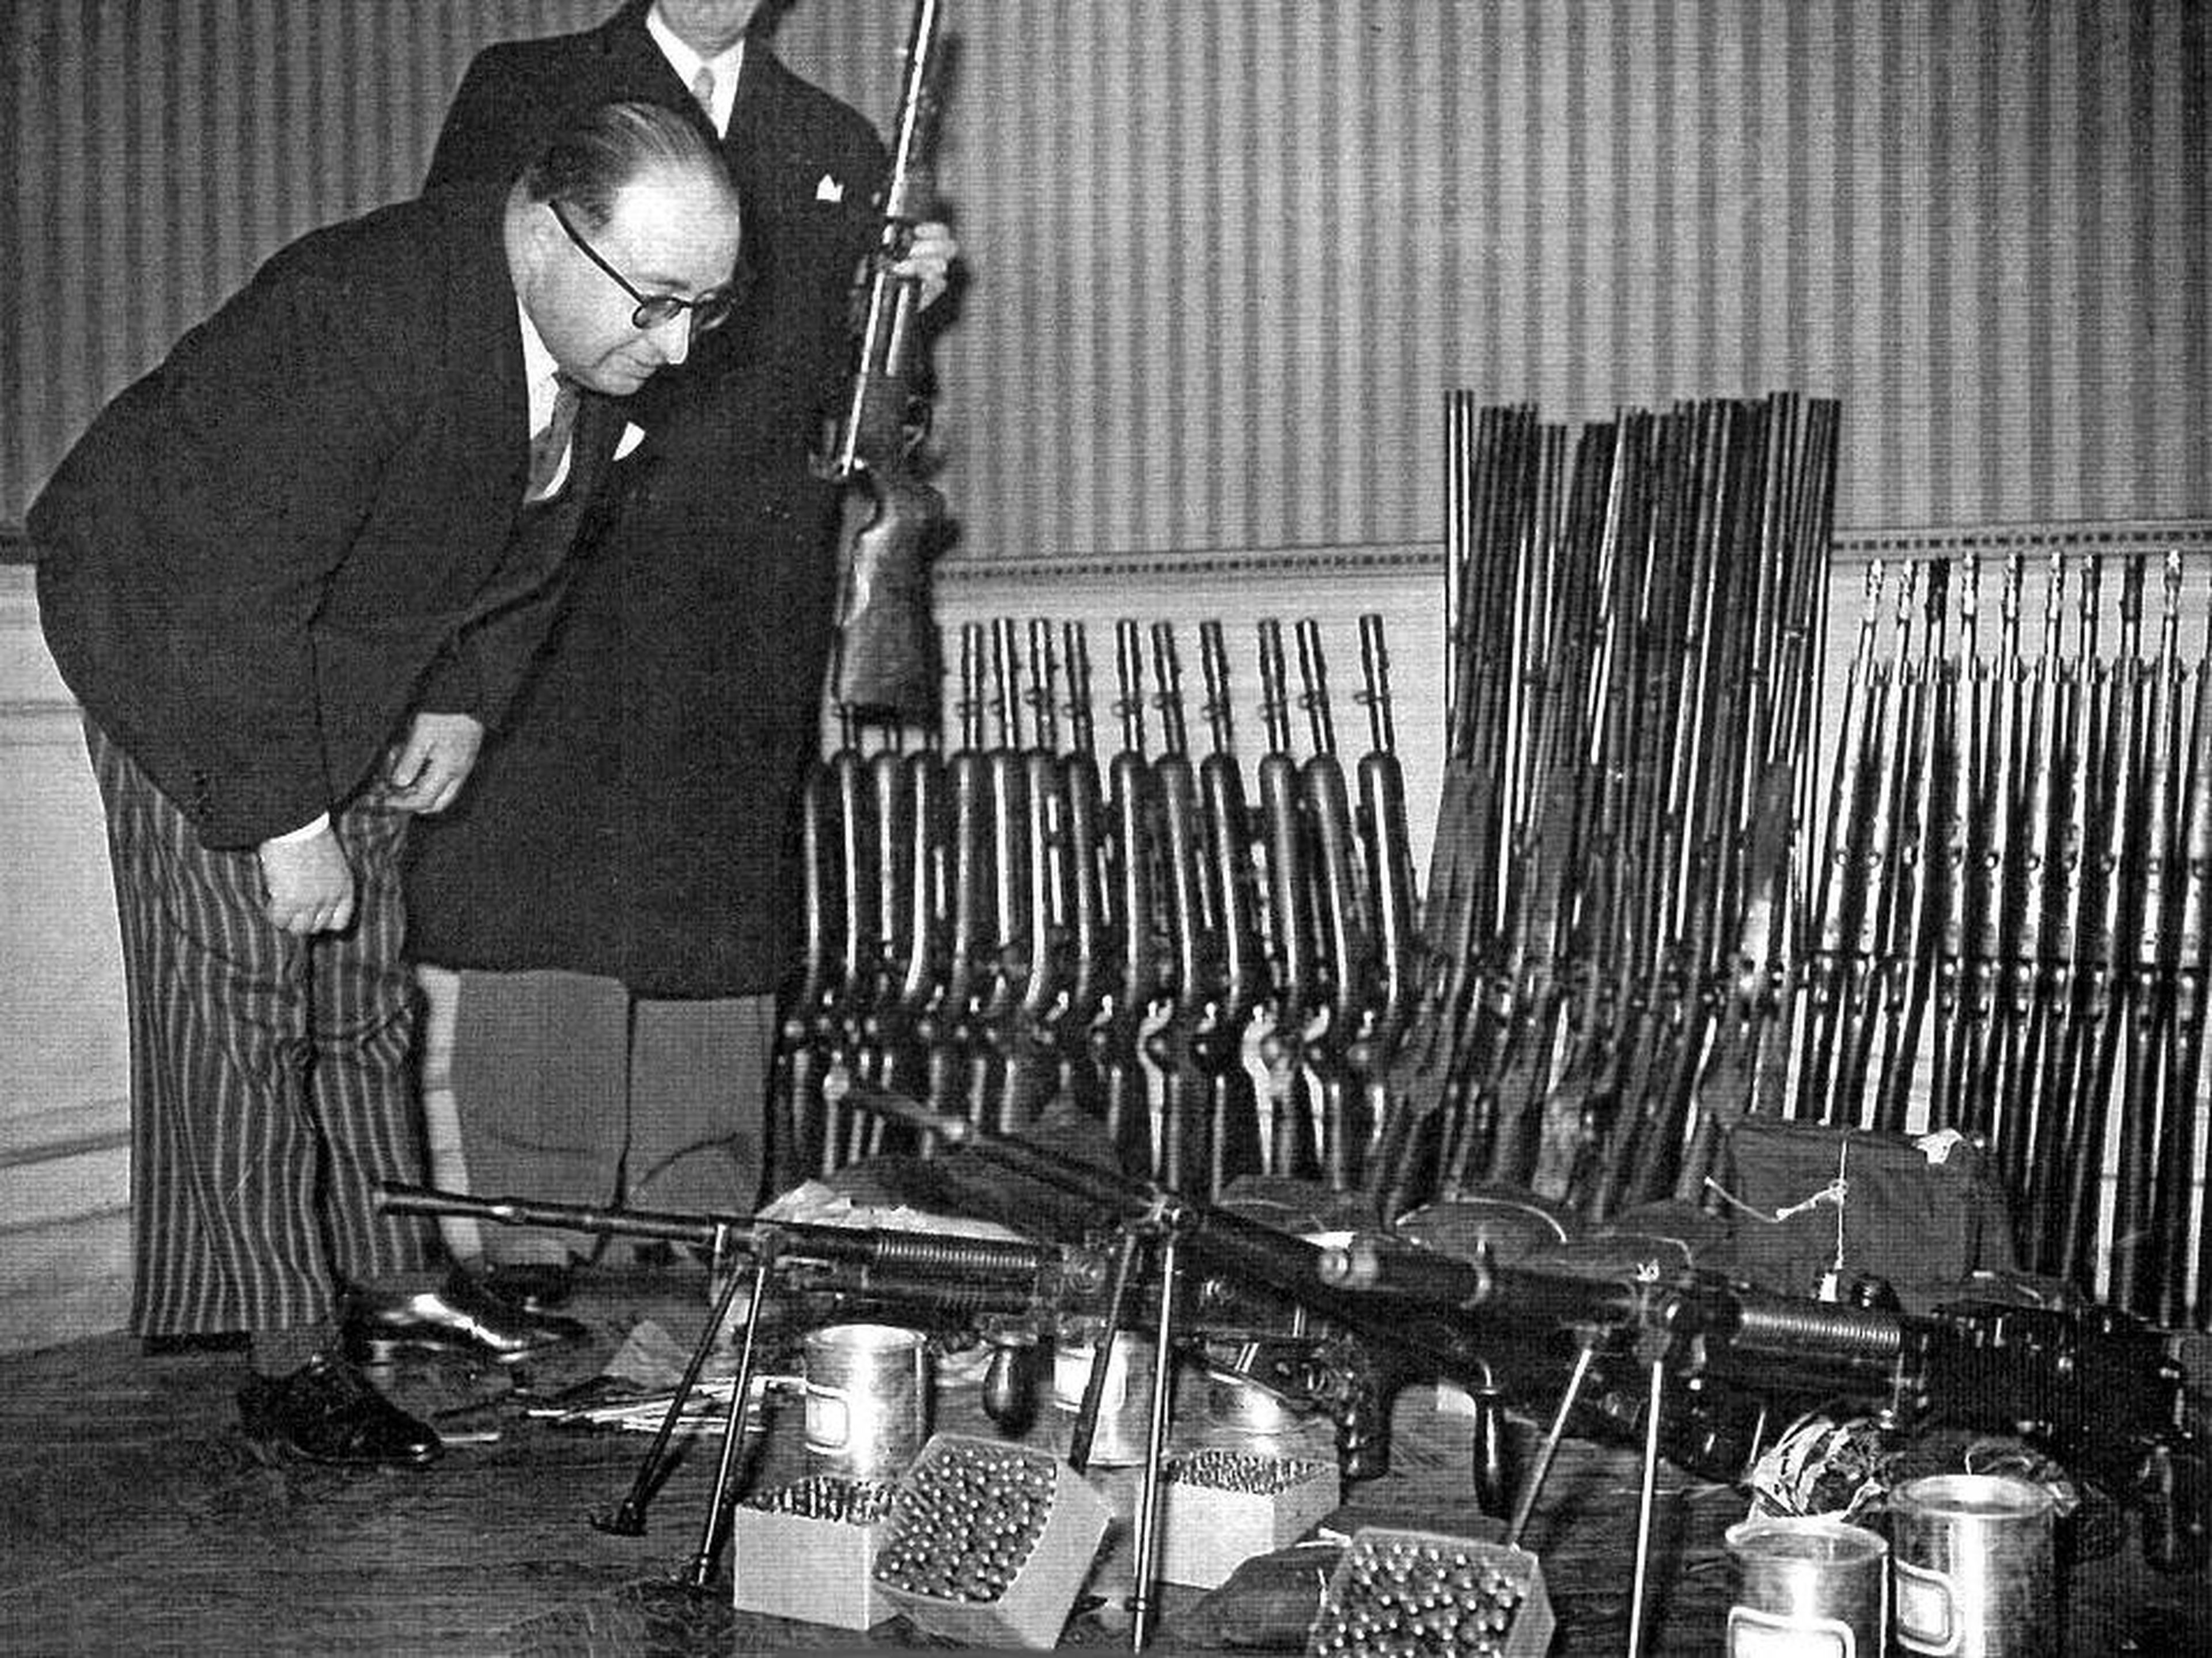 Investigadores franceses inspeccionan armas confiscadas de La Cagoule en 1937.